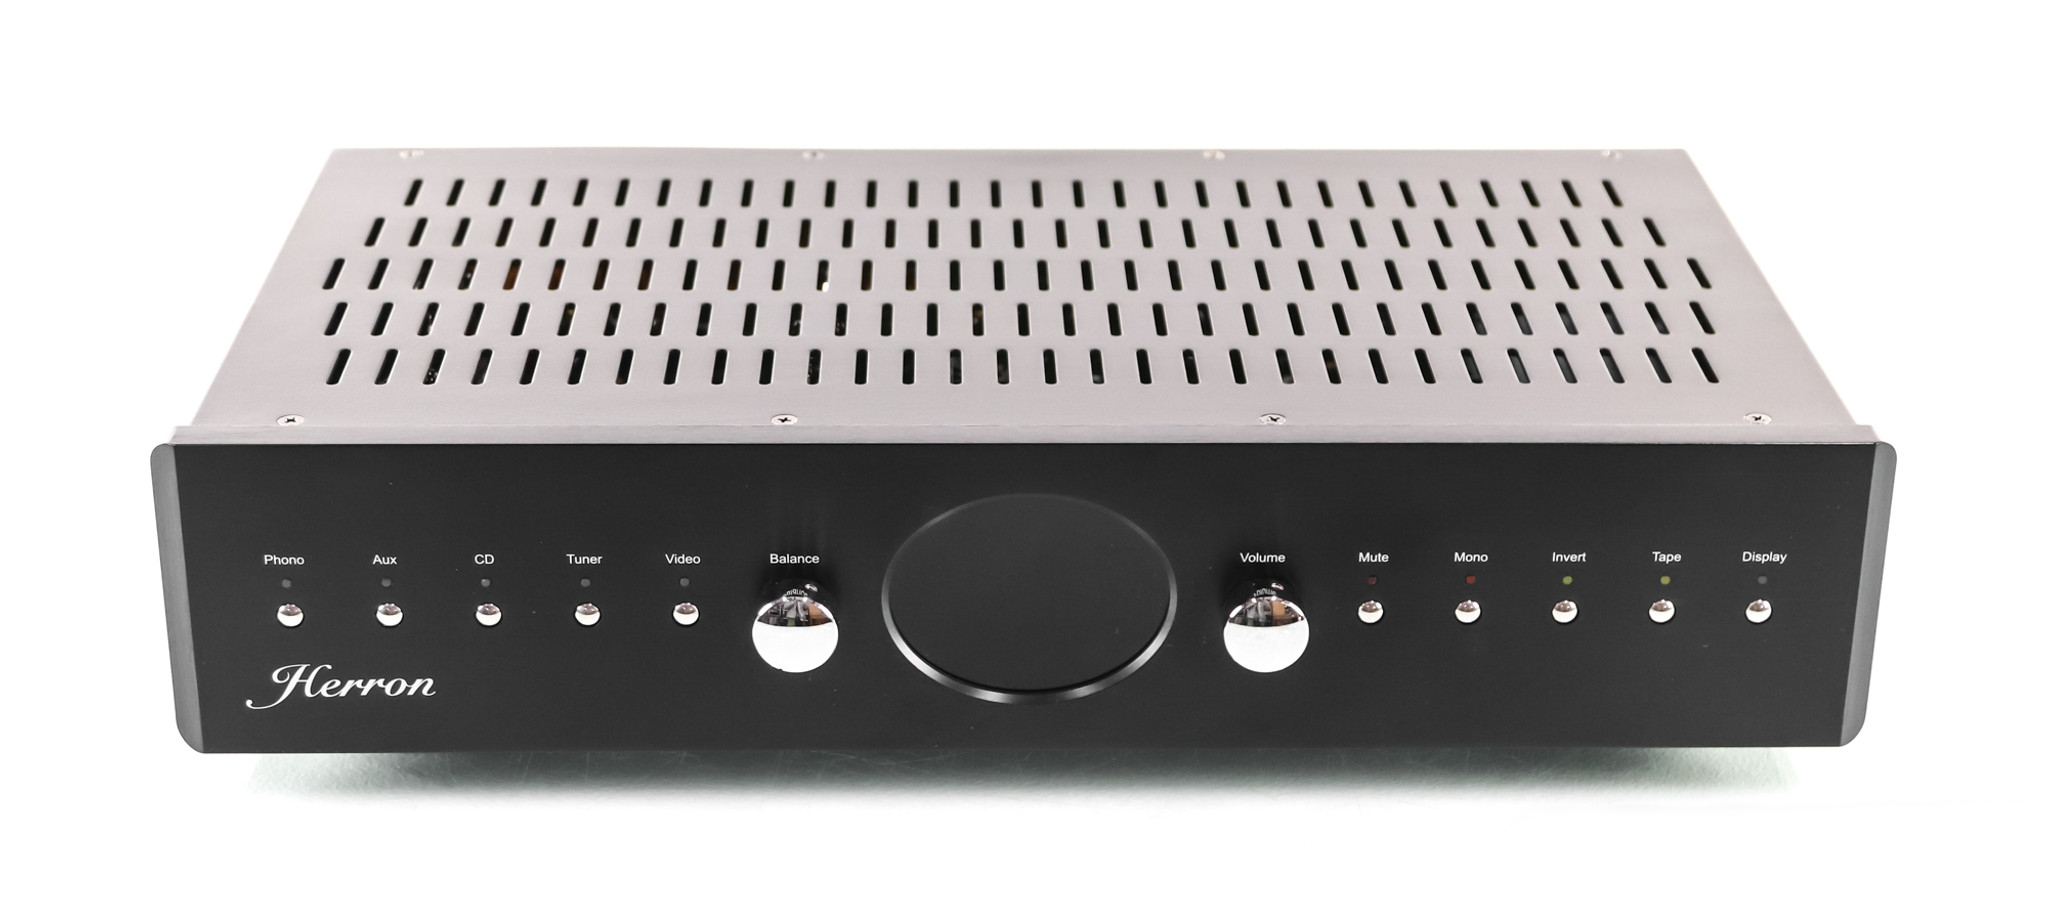 Предусилители Herron Audio VTSP-3 Black предусилители naim audio nac 202